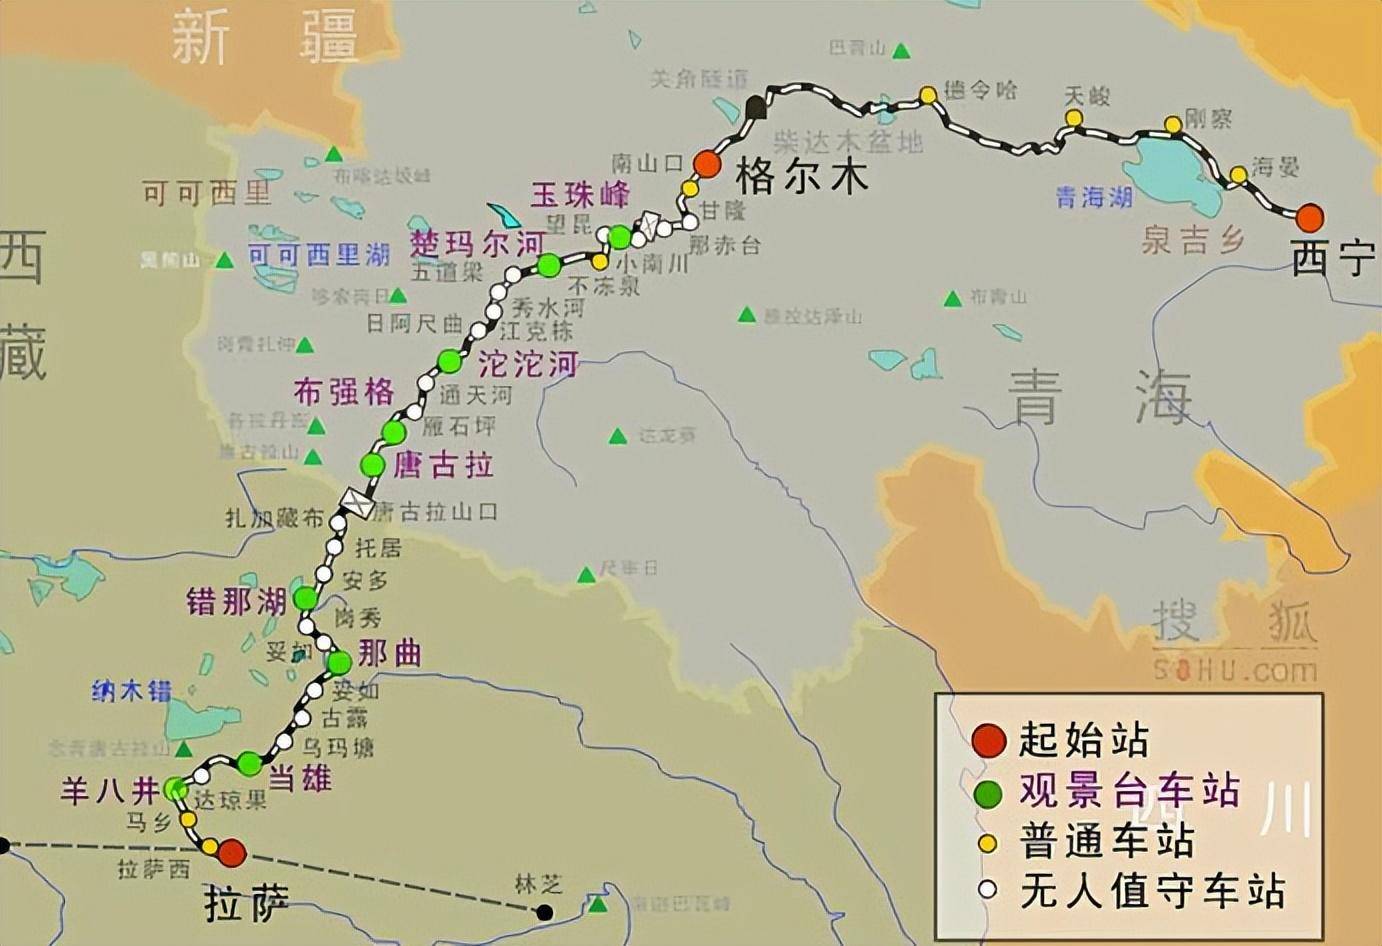 神奇天路再进化:青藏铁路动车组换装,时速飙升至160公里